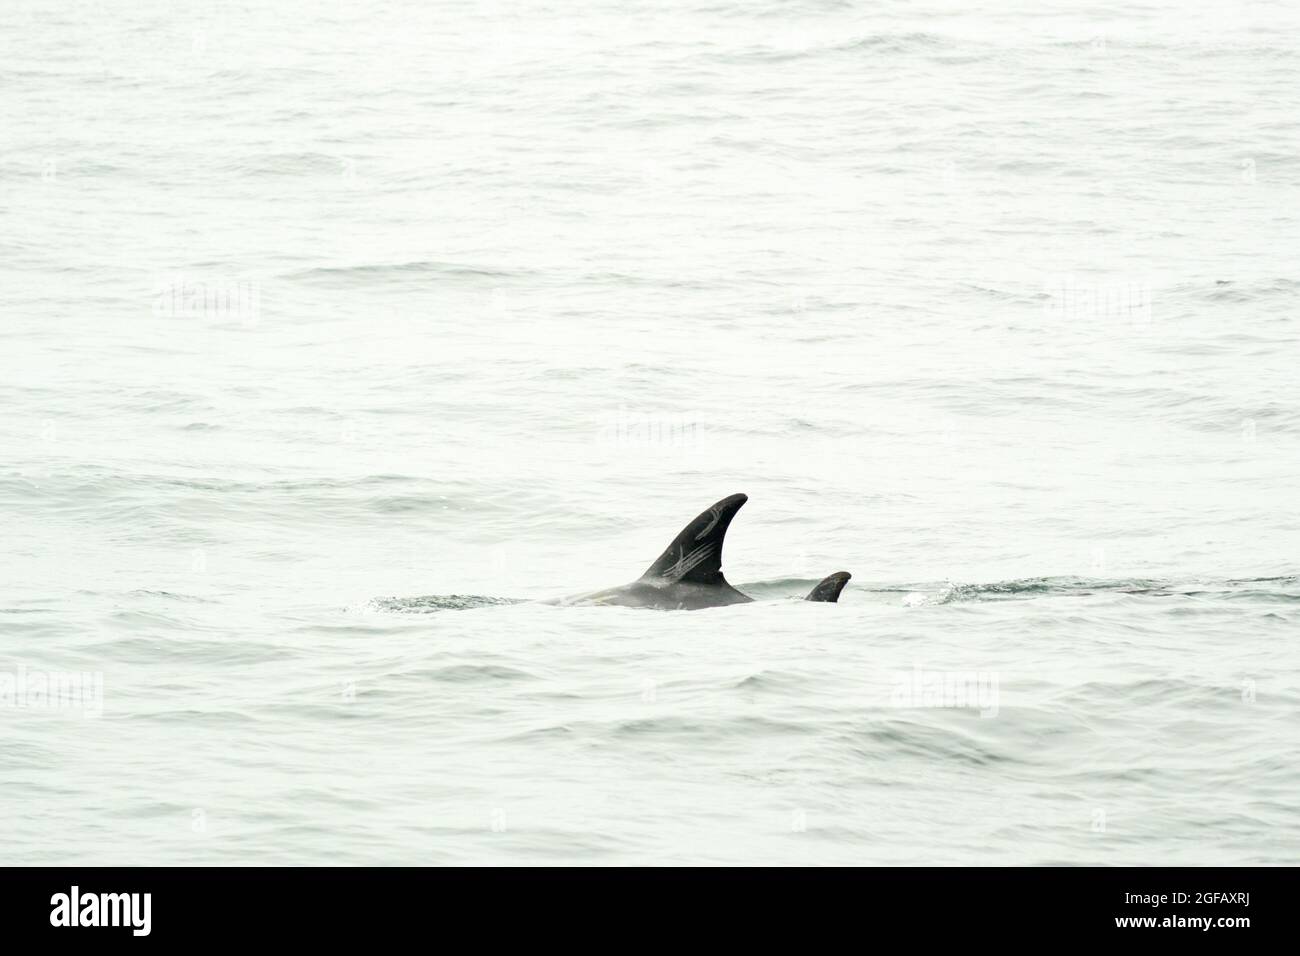 Nageoire dorsale du dauphin sauvage de Risso nageant dans la baie de Monterey, Californie, montrant des cicatrices blanches distinctives Banque D'Images